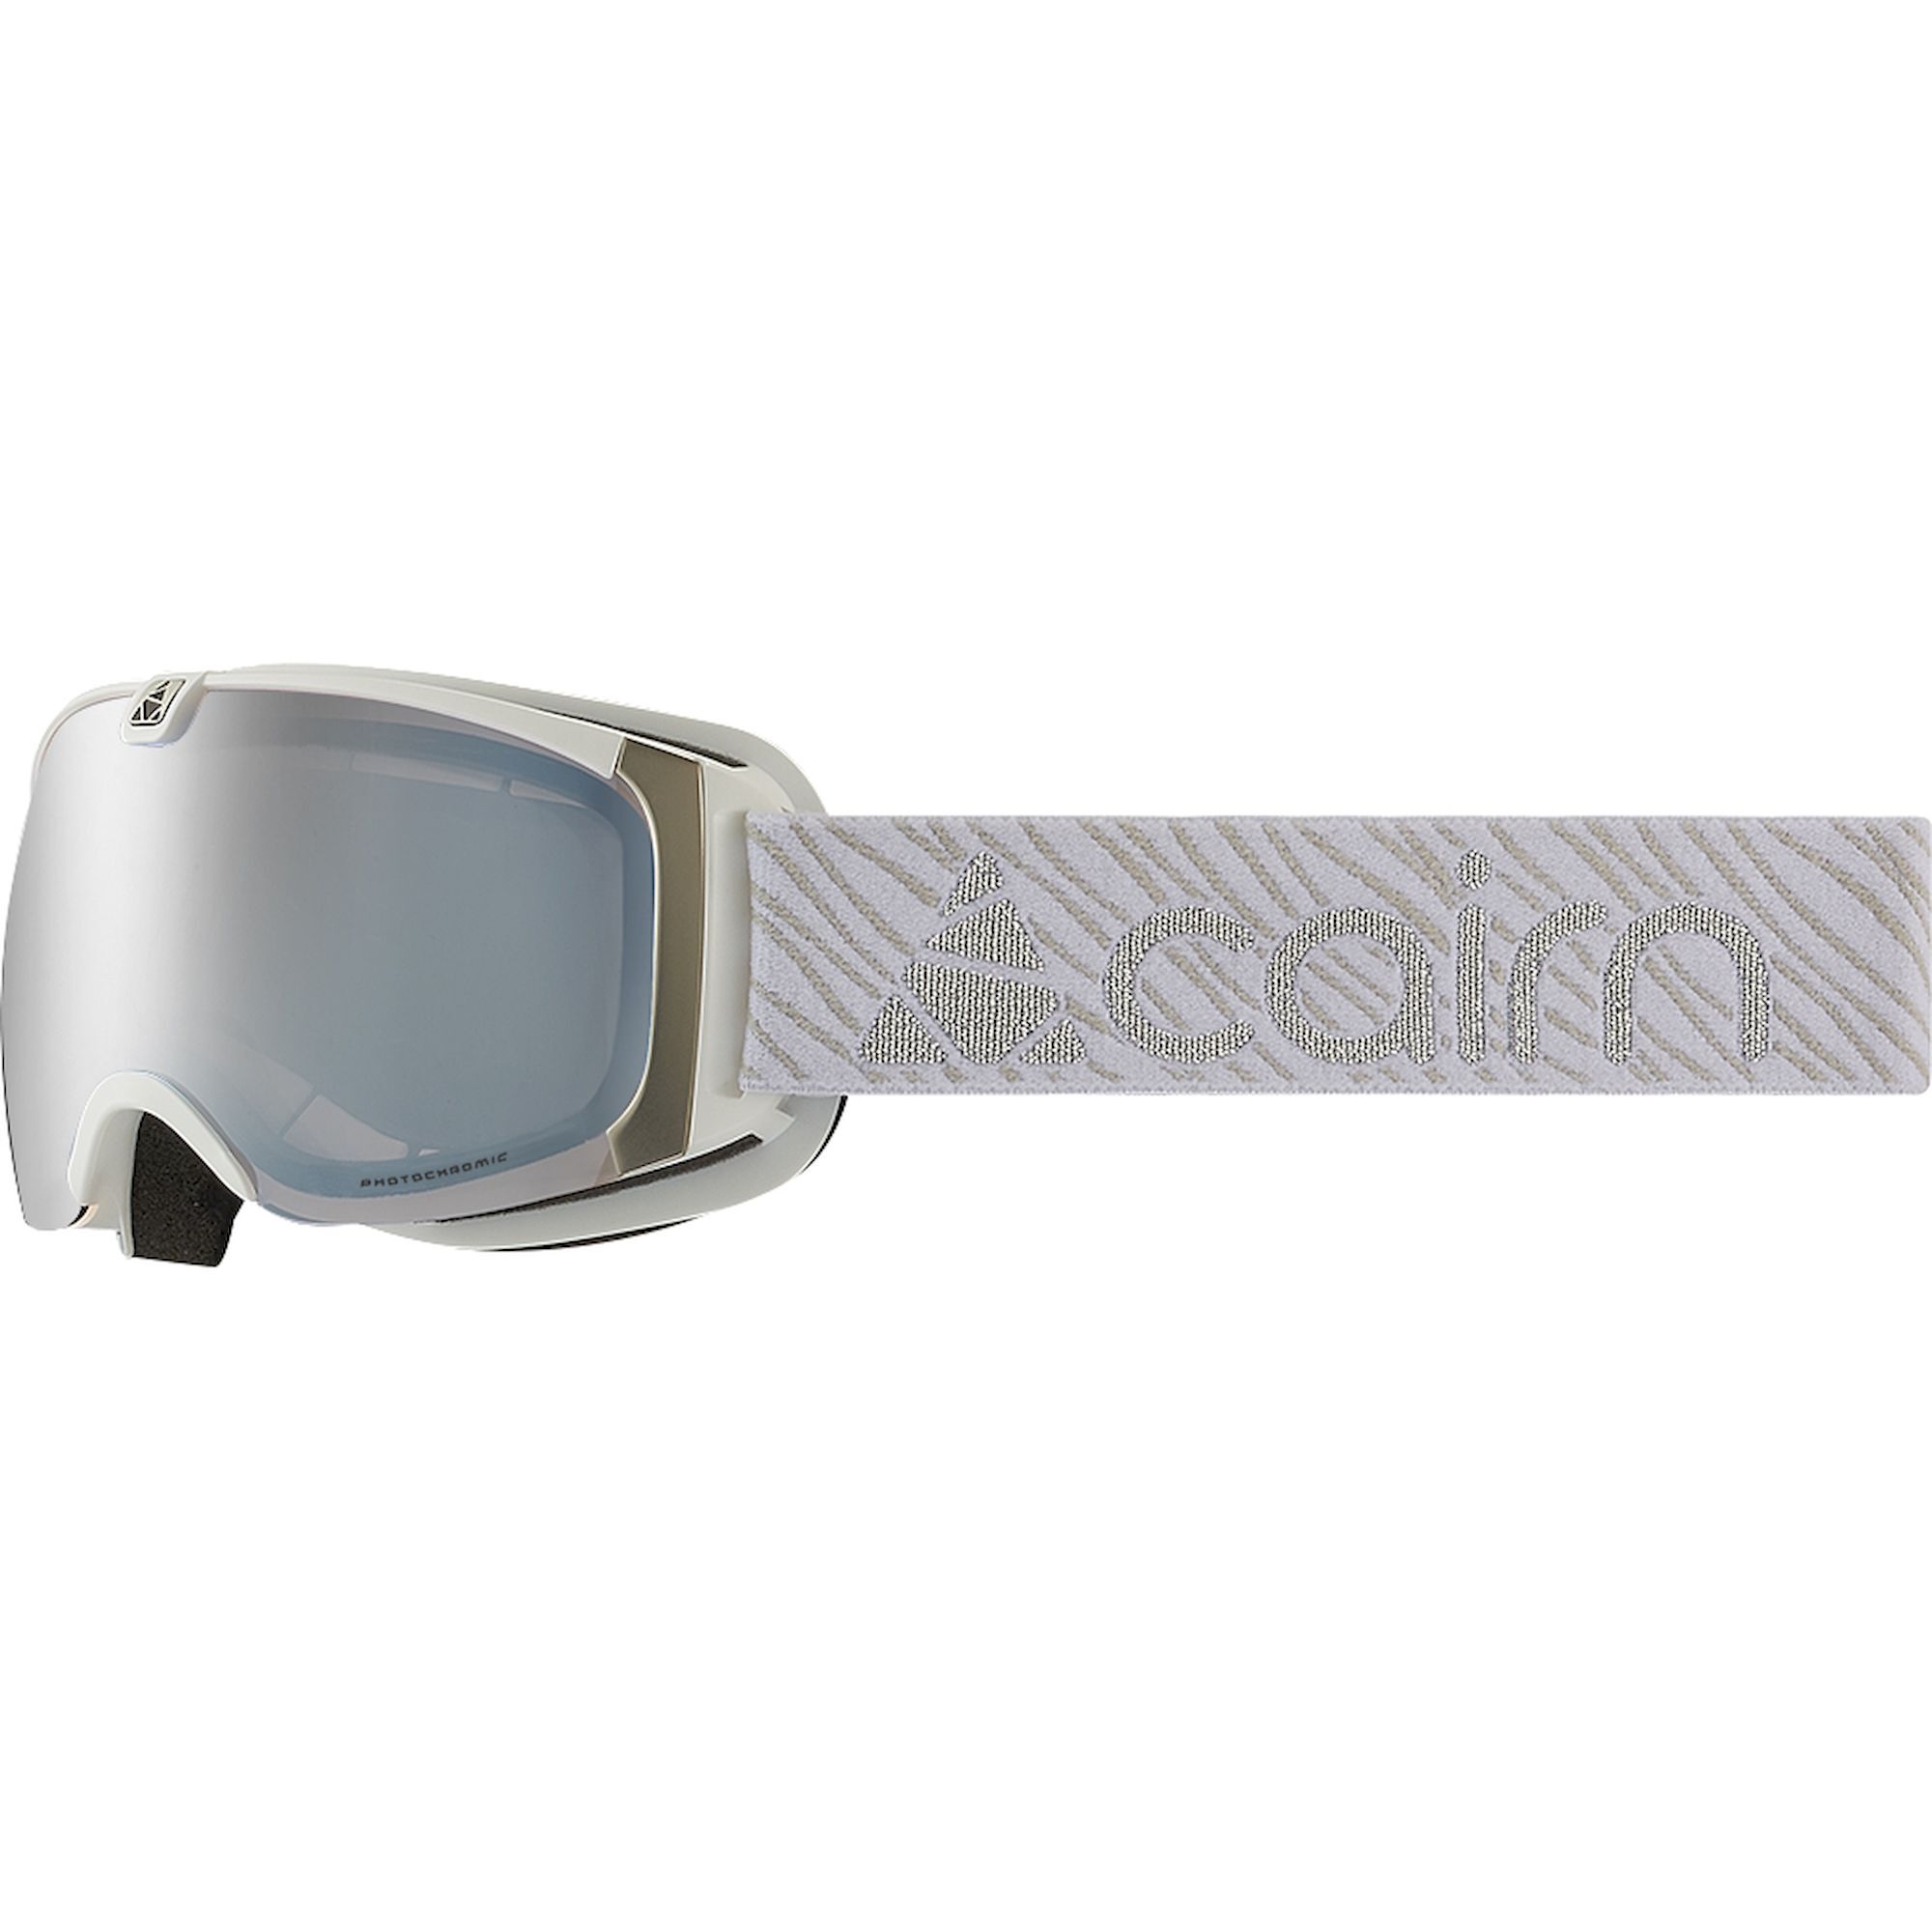 Cairn Pearl Evo Nxt - Ski goggles - Women's